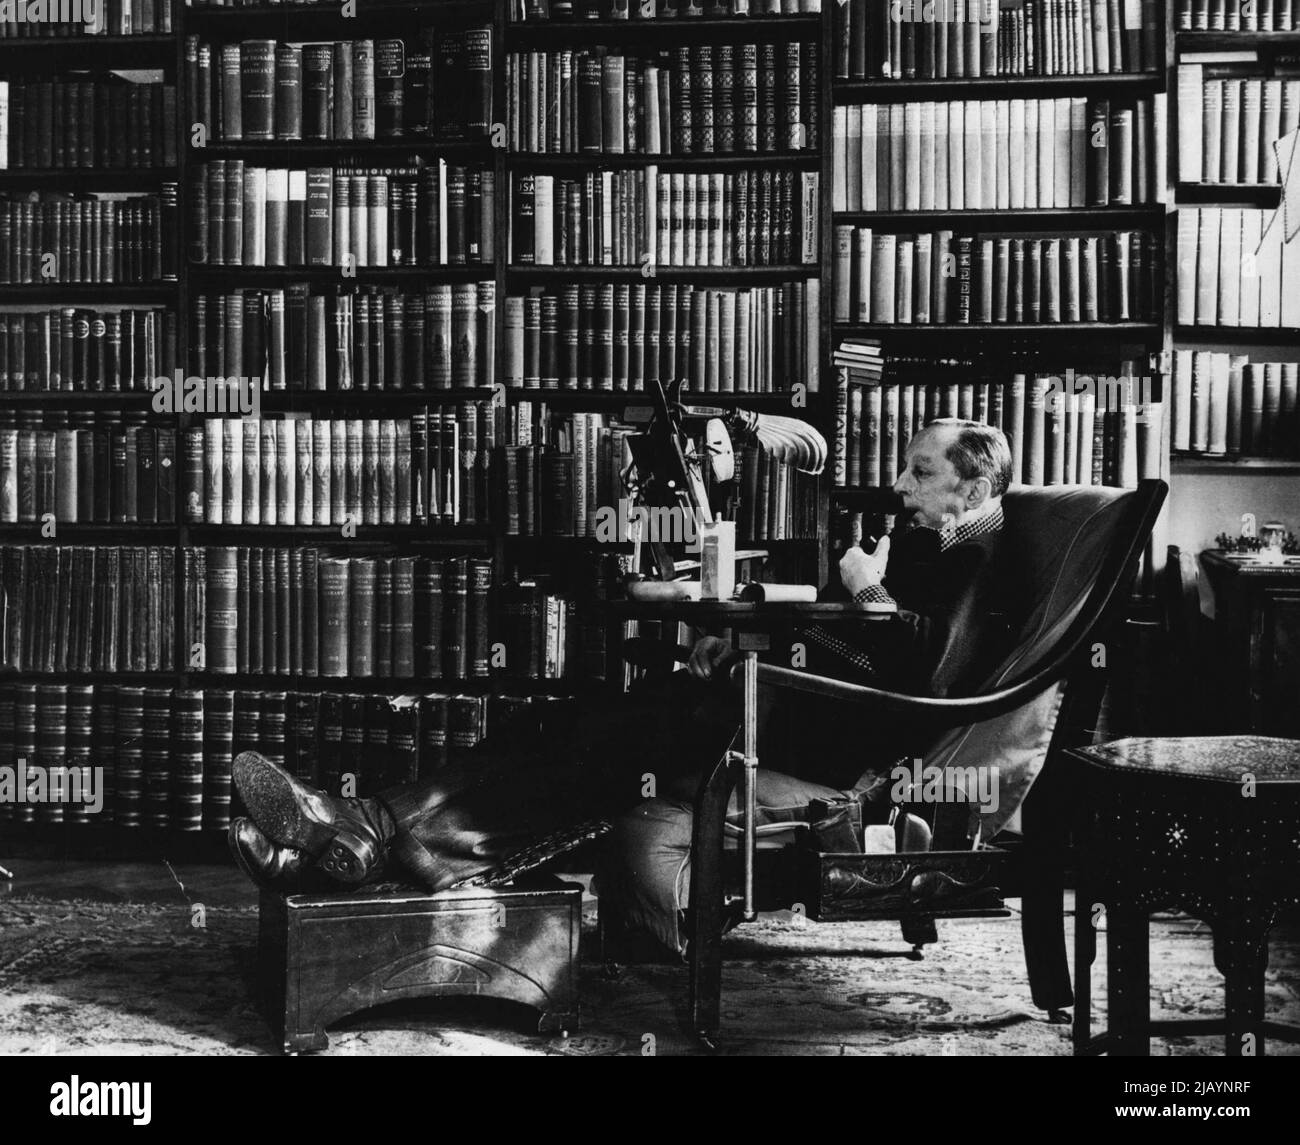 Gadgets, um Komfort beim Lesen zu gewährleisten, umgeben Jack N. Roeg in seiner London Library. Der pensionierte Diamantenhändler besaß einst 22.000 Bücher, ist nun aber mit 3.000 zufrieden. Mit den Gadgets, die er erfunden hat, ist er versichert, dass er nach einer Sitzung in seiner Bibliothek keine schmerzenden Arme, müde Augen oder steife Gelenke geben wird. 19. März 1948. (Foto von Acme). Stockfoto